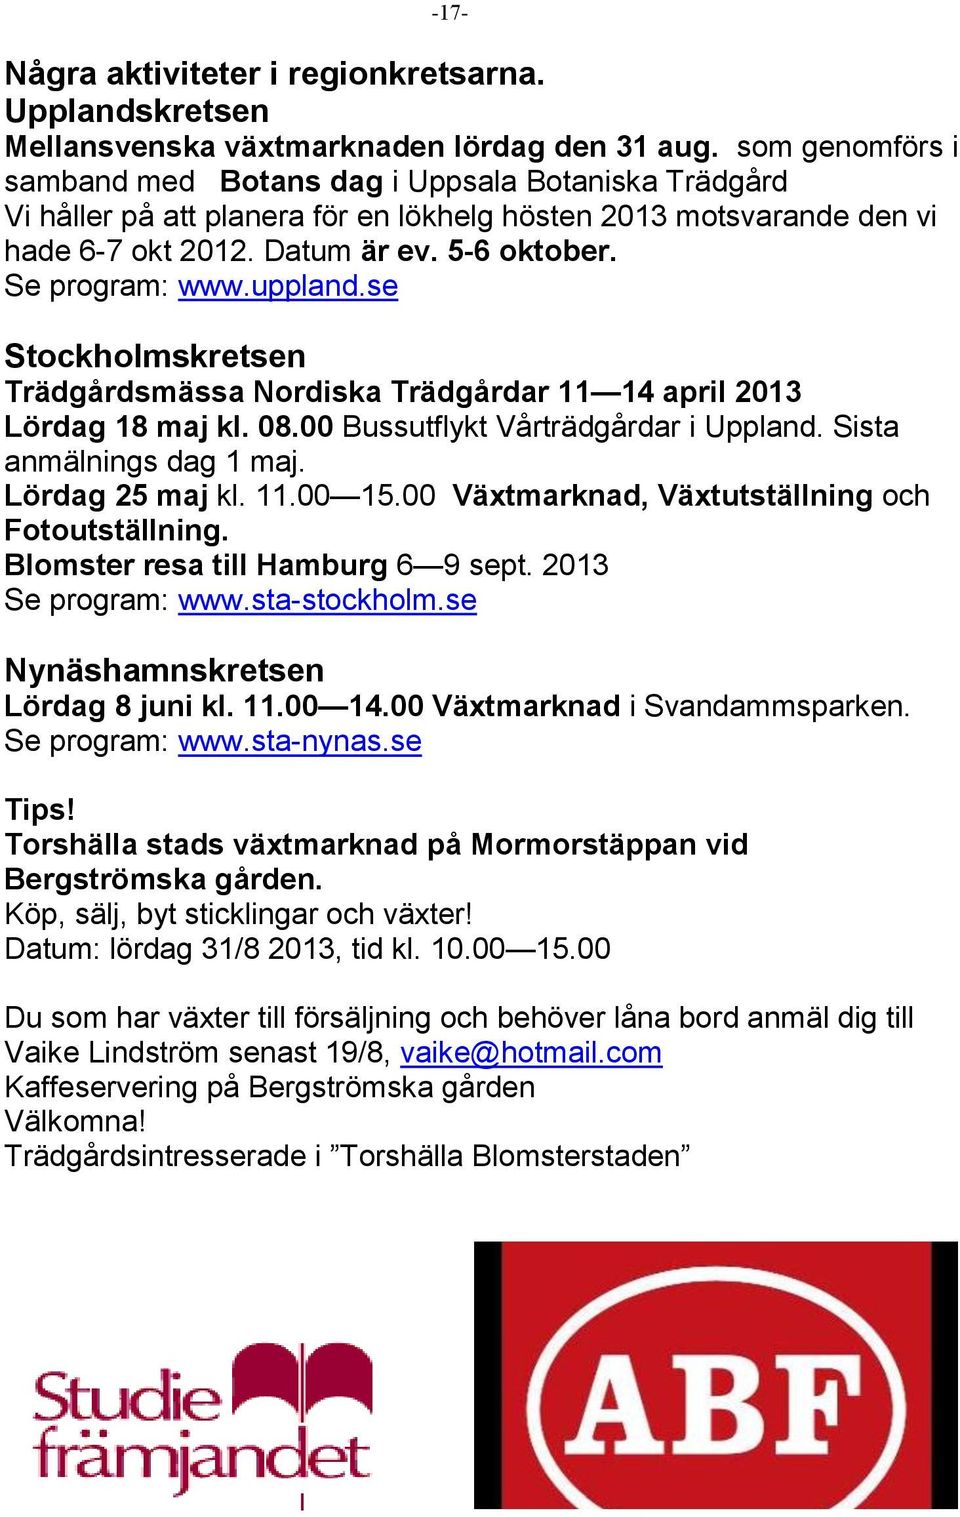 uppland.se Stockholmskretsen Trädgårdsmässa Nordiska Trädgårdar 11 14 april 2013 Lördag 18 maj kl. 08.00 Bussutflykt Vårträdgårdar i Uppland. Sista anmälnings dag 1 maj. Lördag 25 maj kl. 11.00 15.